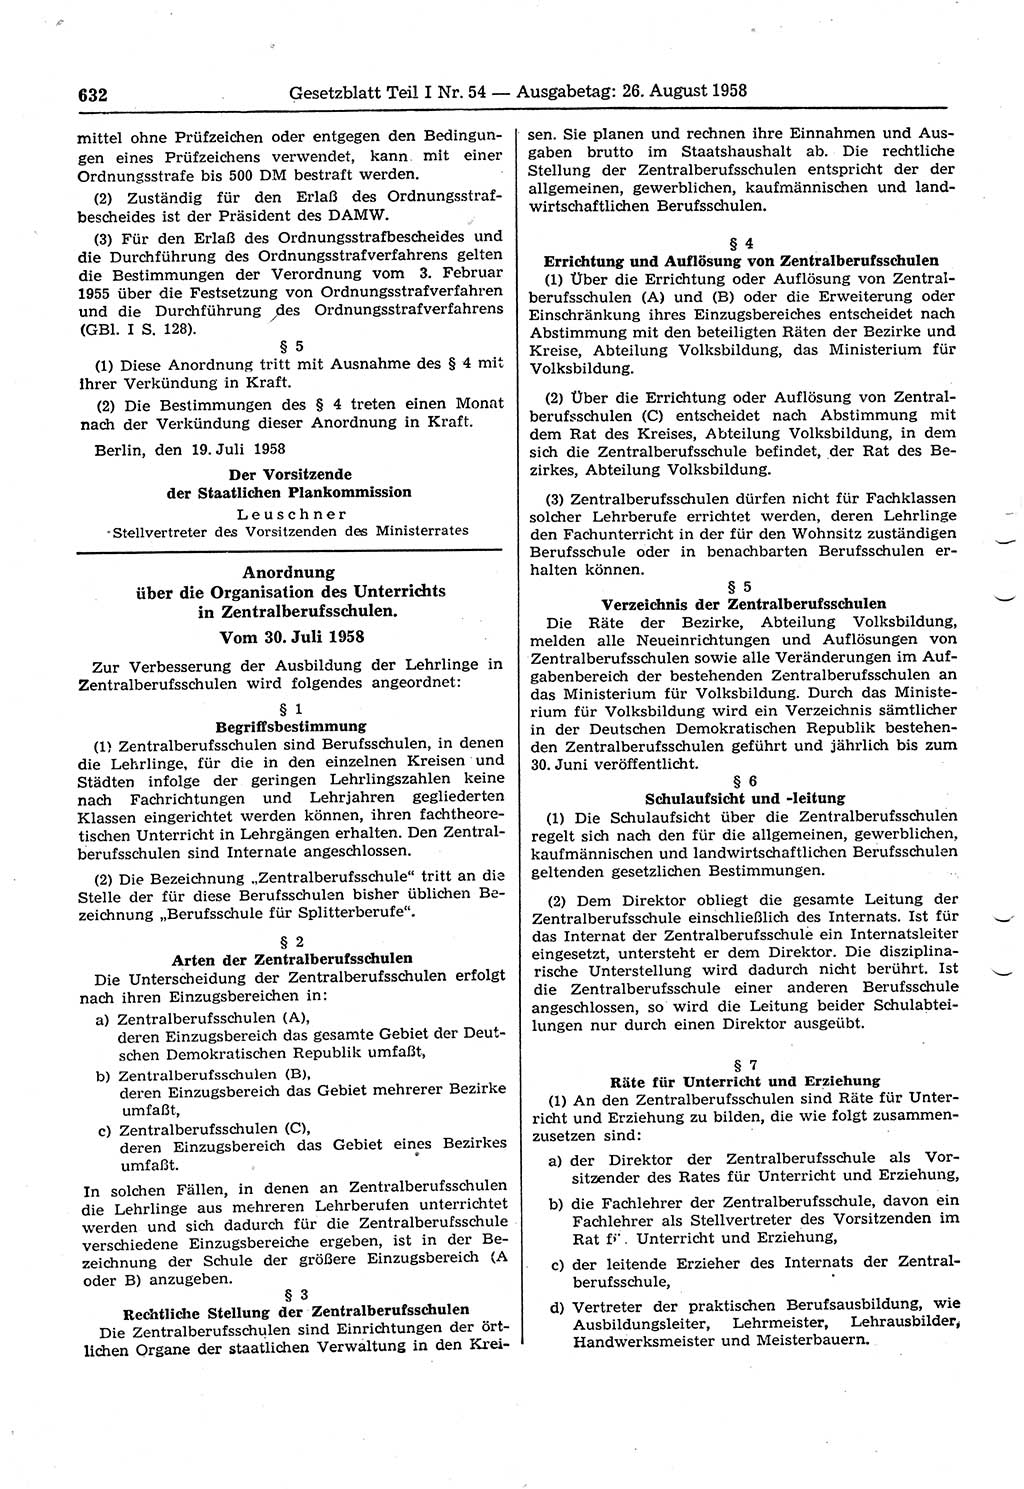 Gesetzblatt (GBl.) der Deutschen Demokratischen Republik (DDR) Teil Ⅰ 1958, Seite 632 (GBl. DDR Ⅰ 1958, S. 632)